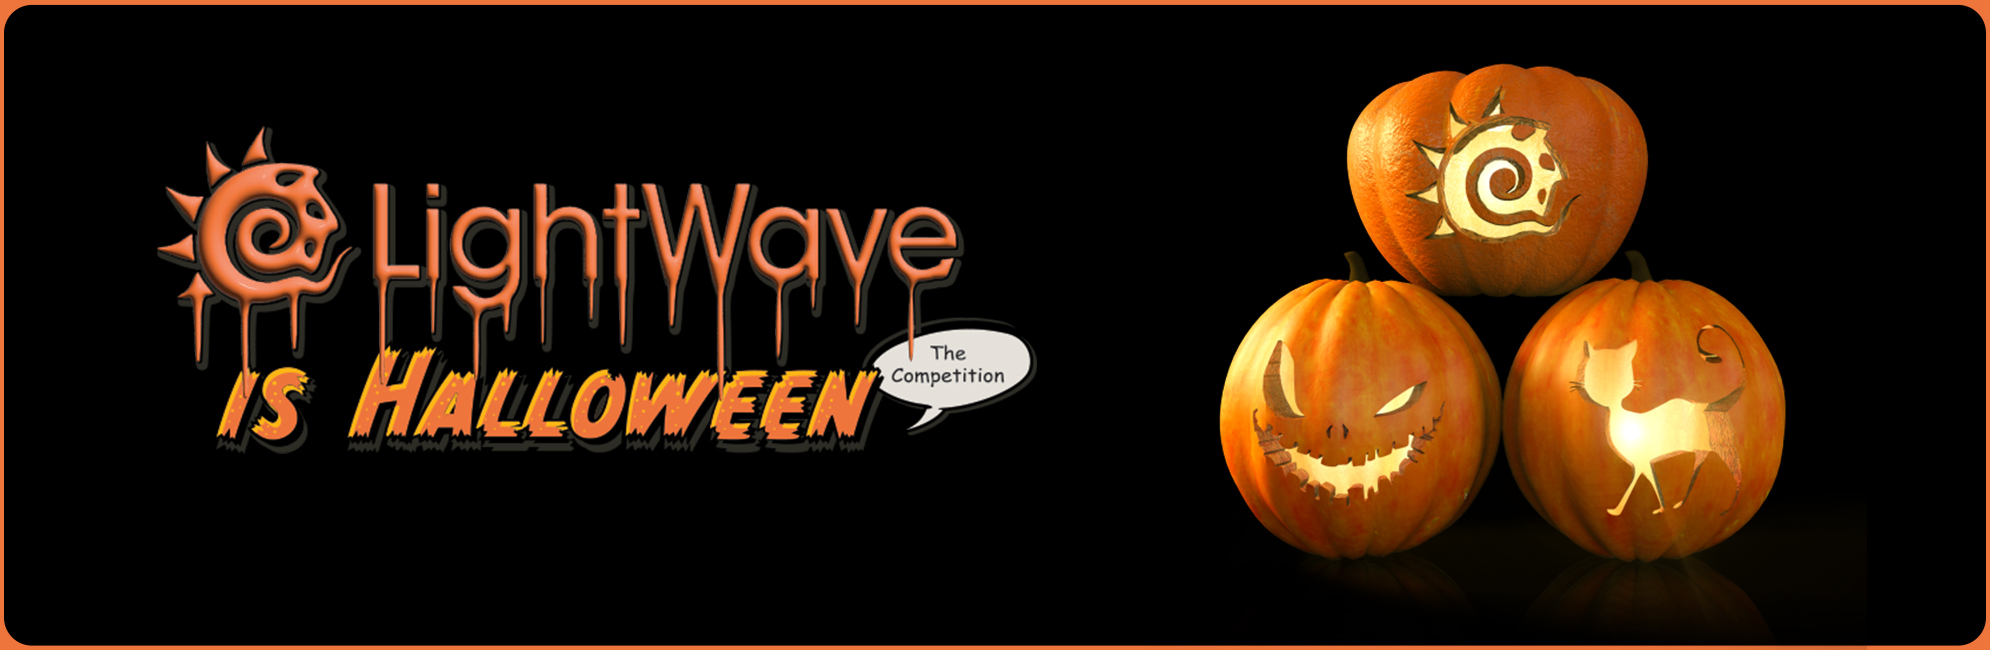 Nome: LightWave is Halloween  LightWave 3D Promo 20320918.jpg
Visite: 57
Dimensione: 387.4 KB